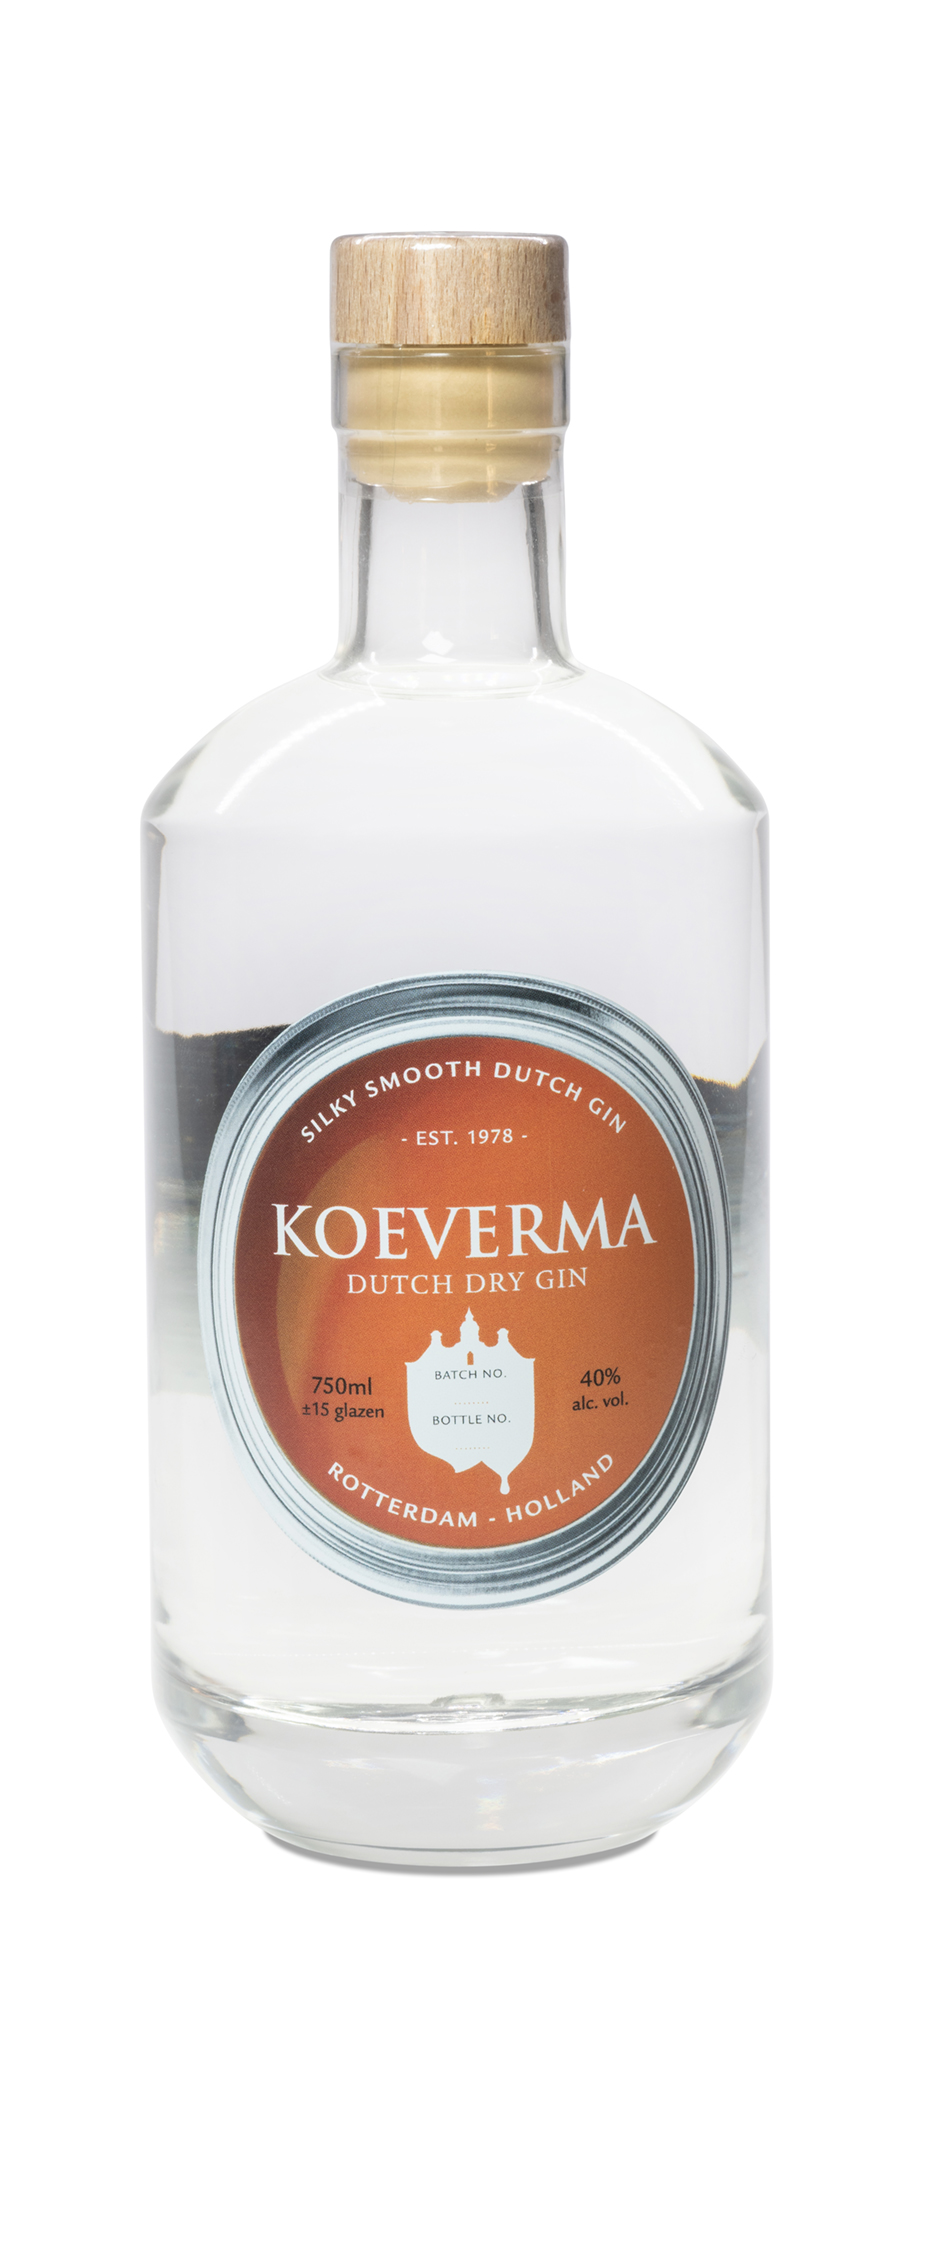 Private label fles gin met custom etiket voor Koeverma schilders